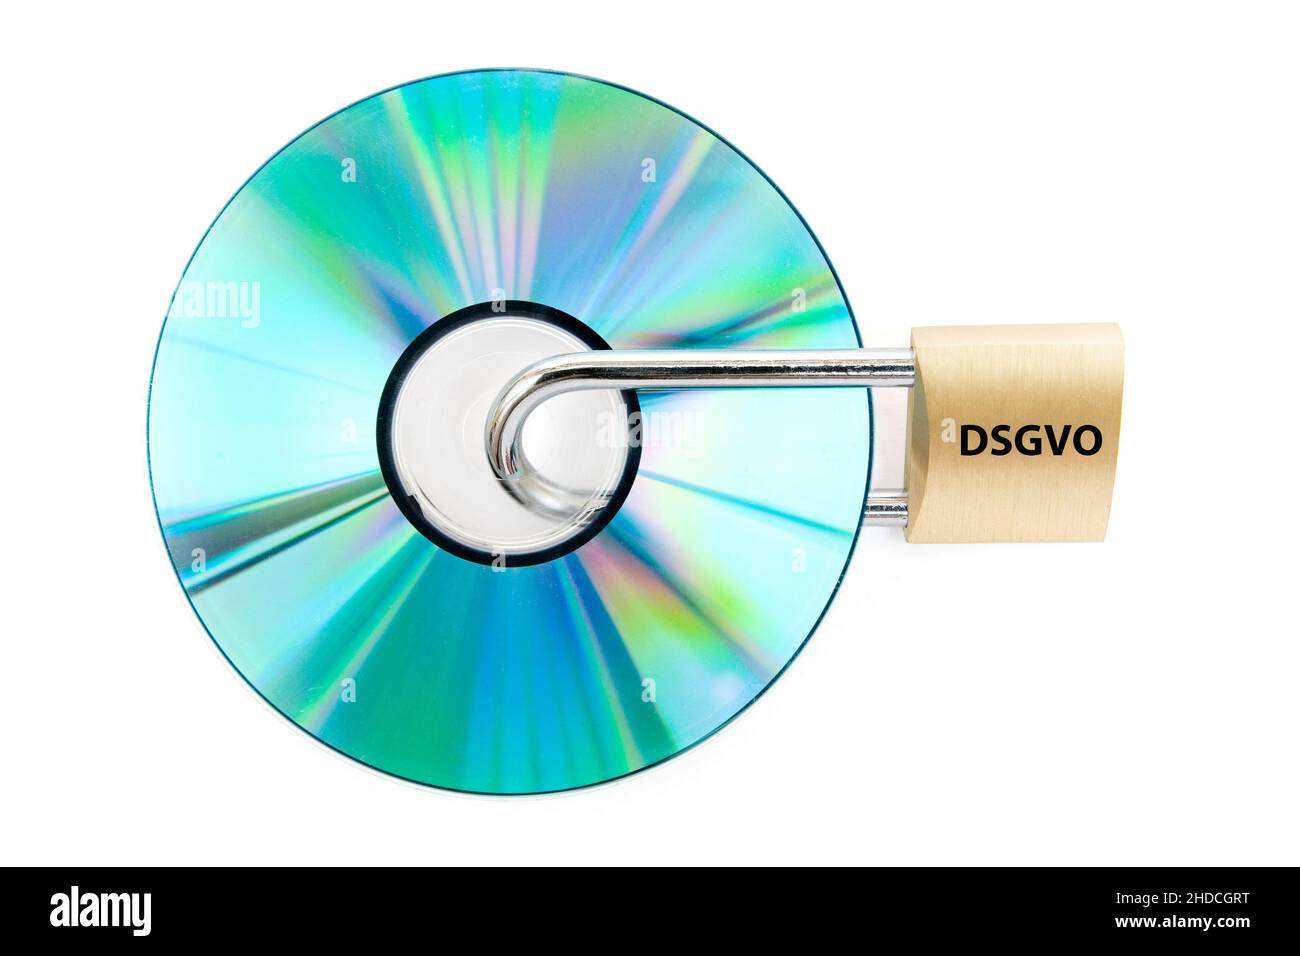 DVD, Daten, geschuetzt, Aufschrift DSGVO Sicherheitsschloss,,, Foto de stock